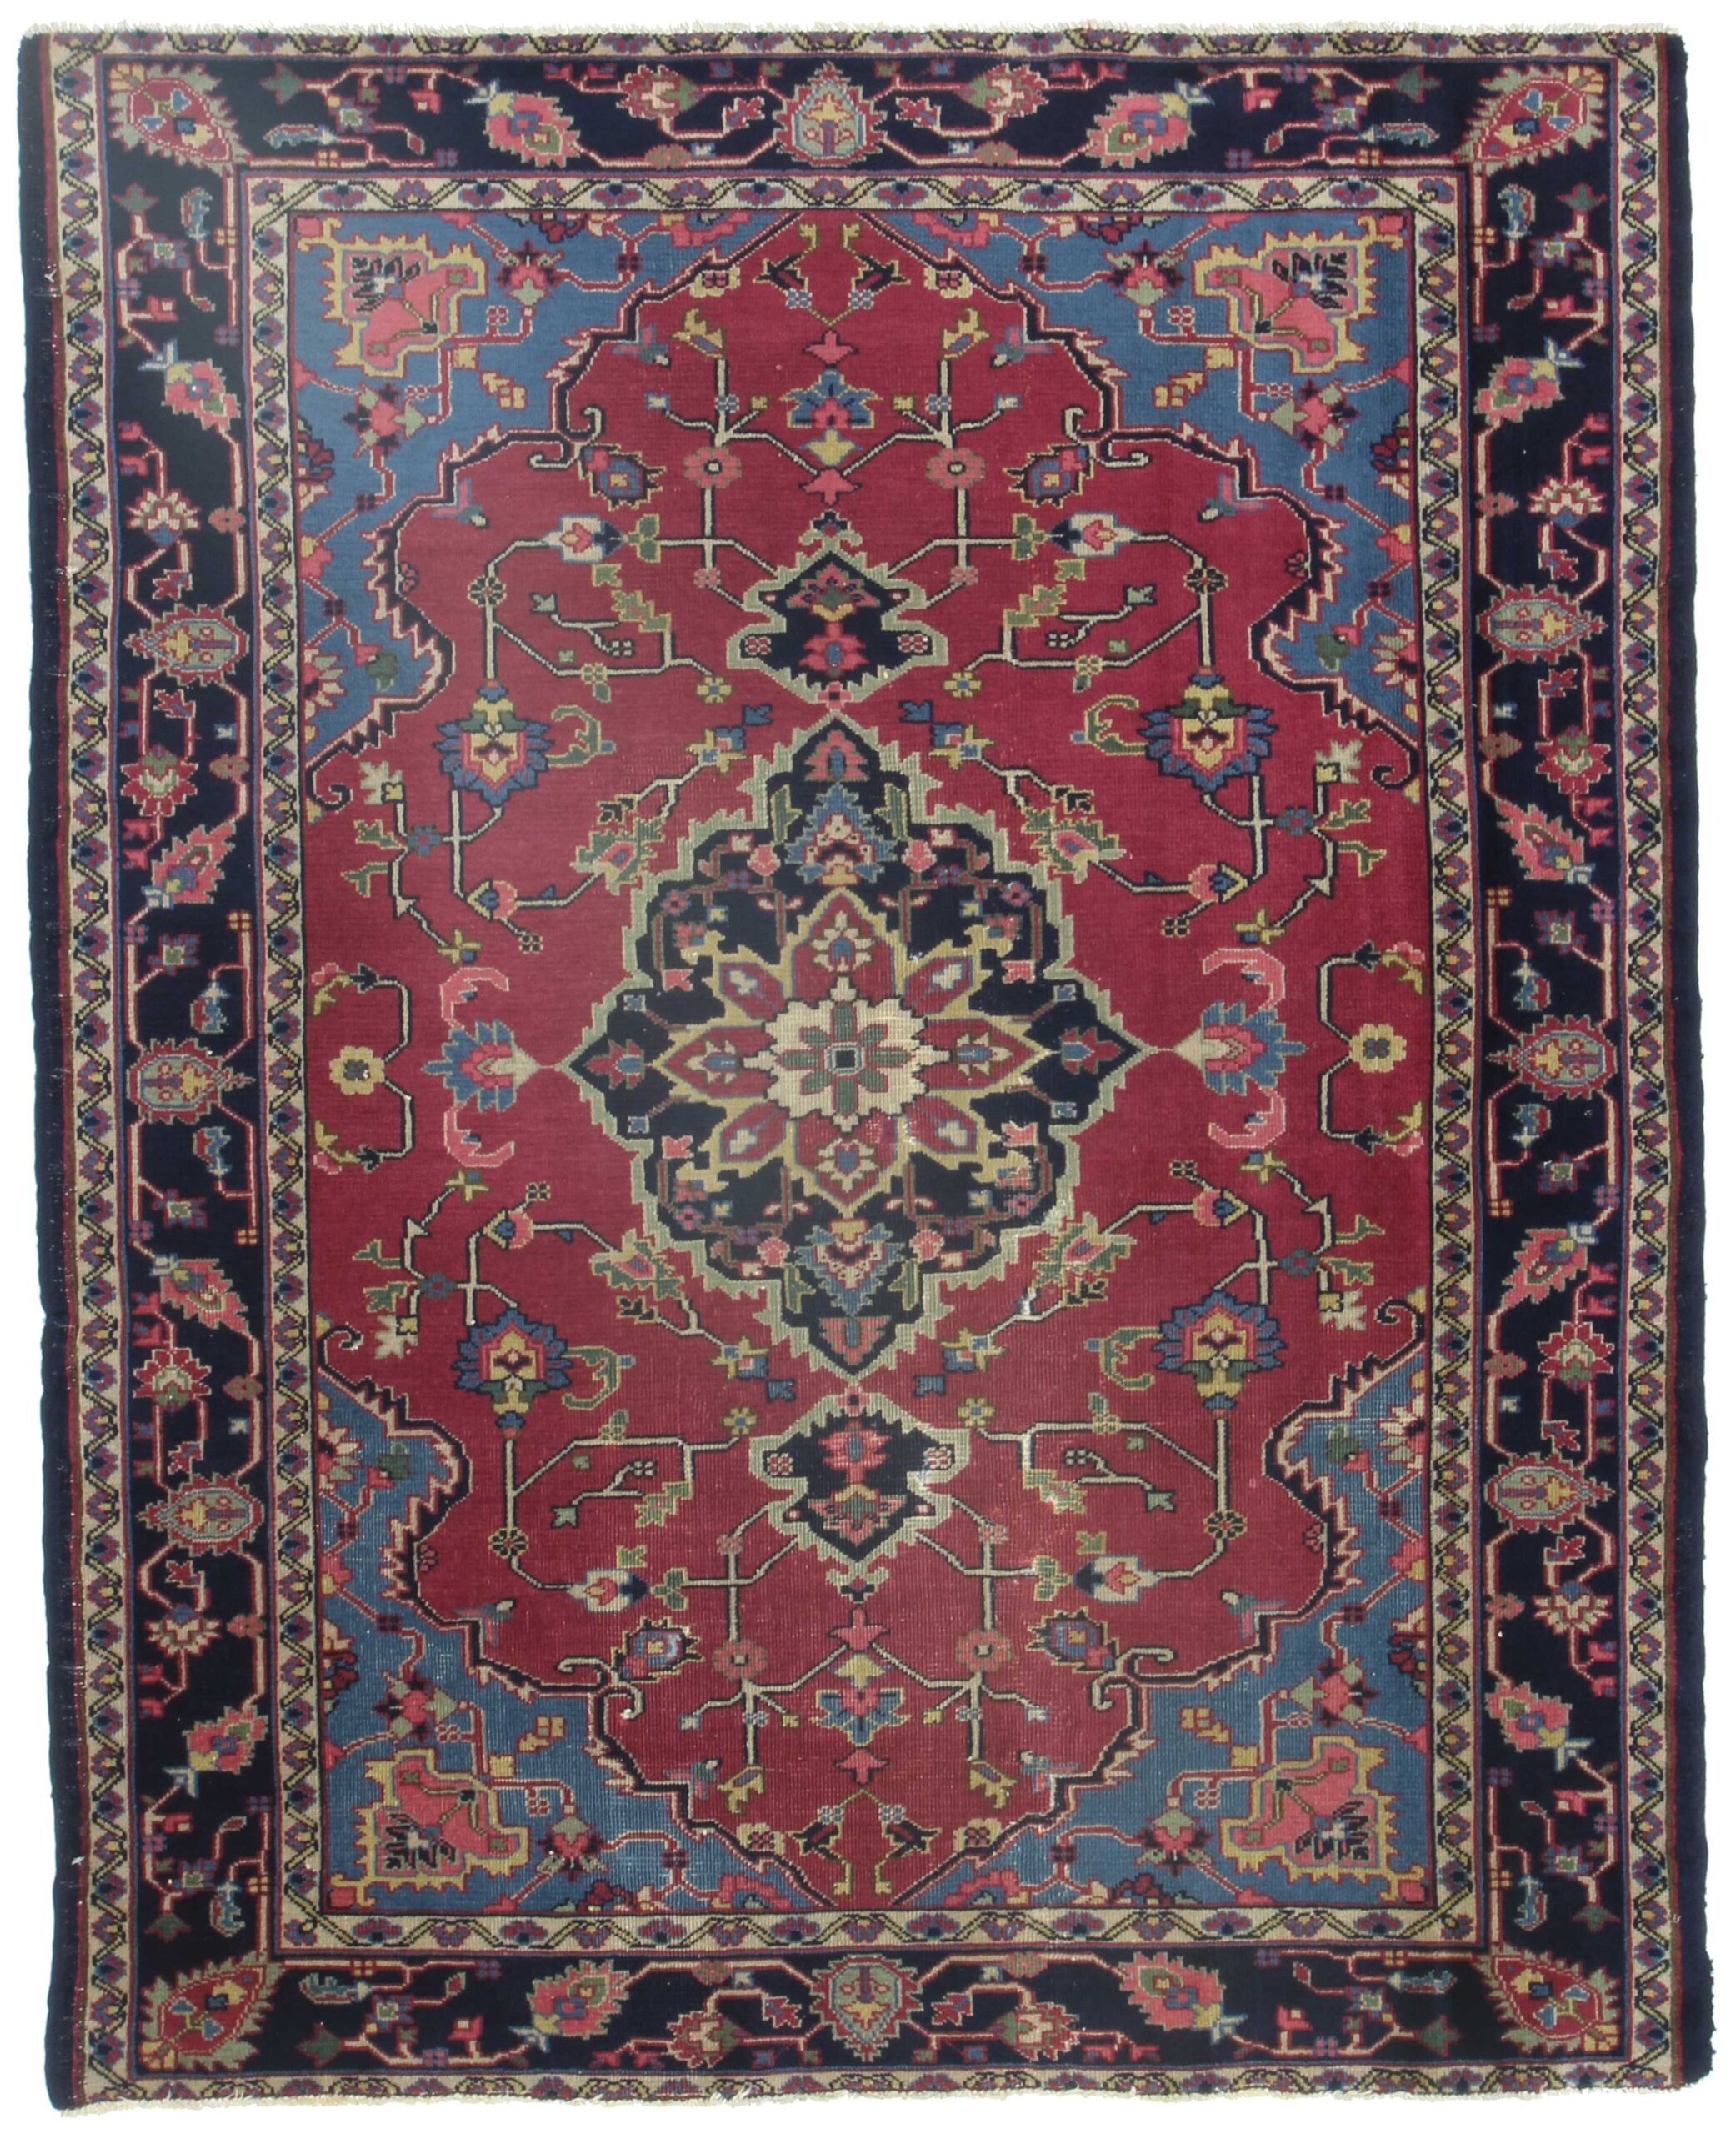 Benefits of turkish rug